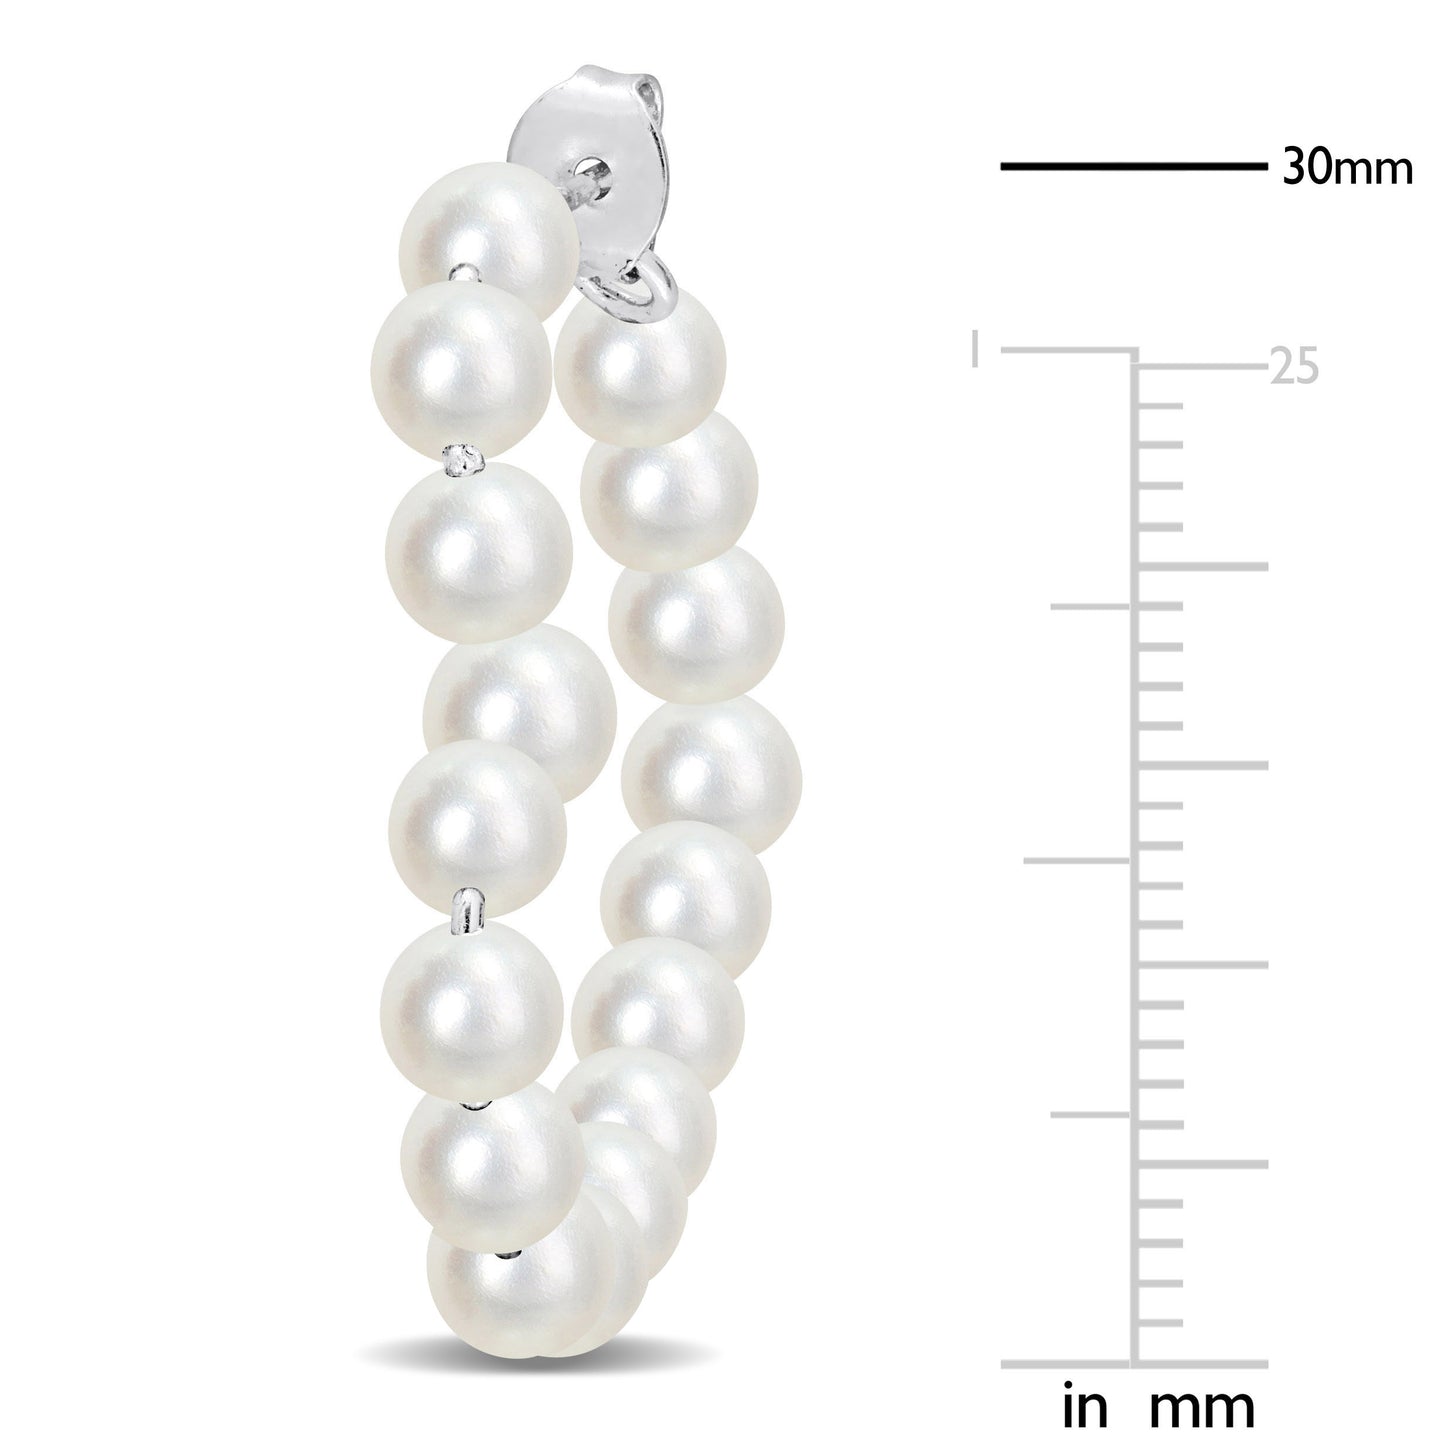 4.5-5mm Cultured freshwater pearl open heart hoop earrings in sterling silver